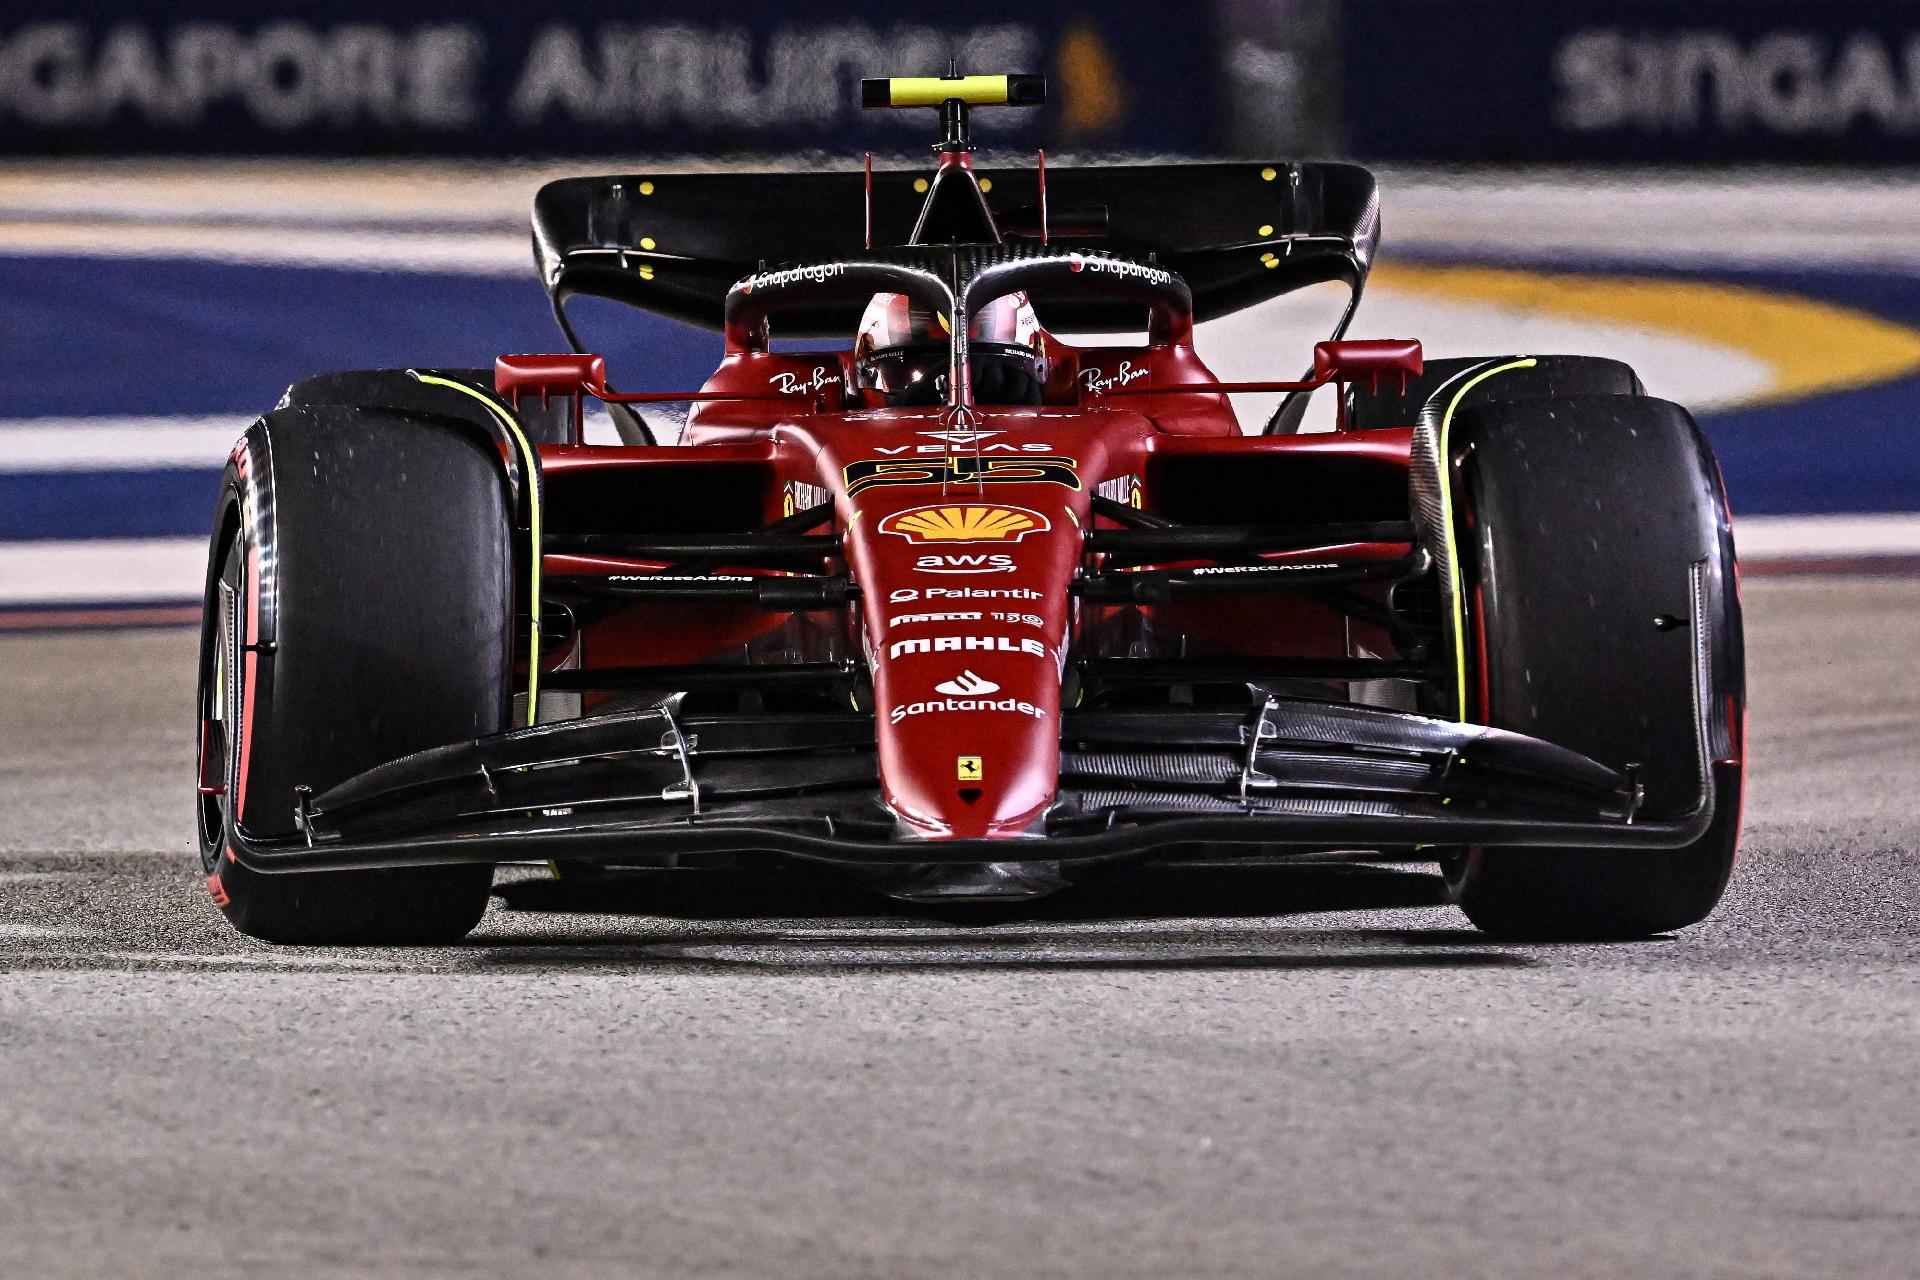 F1: Sainz puxa dobradinha da Ferrari e é mais rápido no TL1 do GP do México  - Notícia de F1